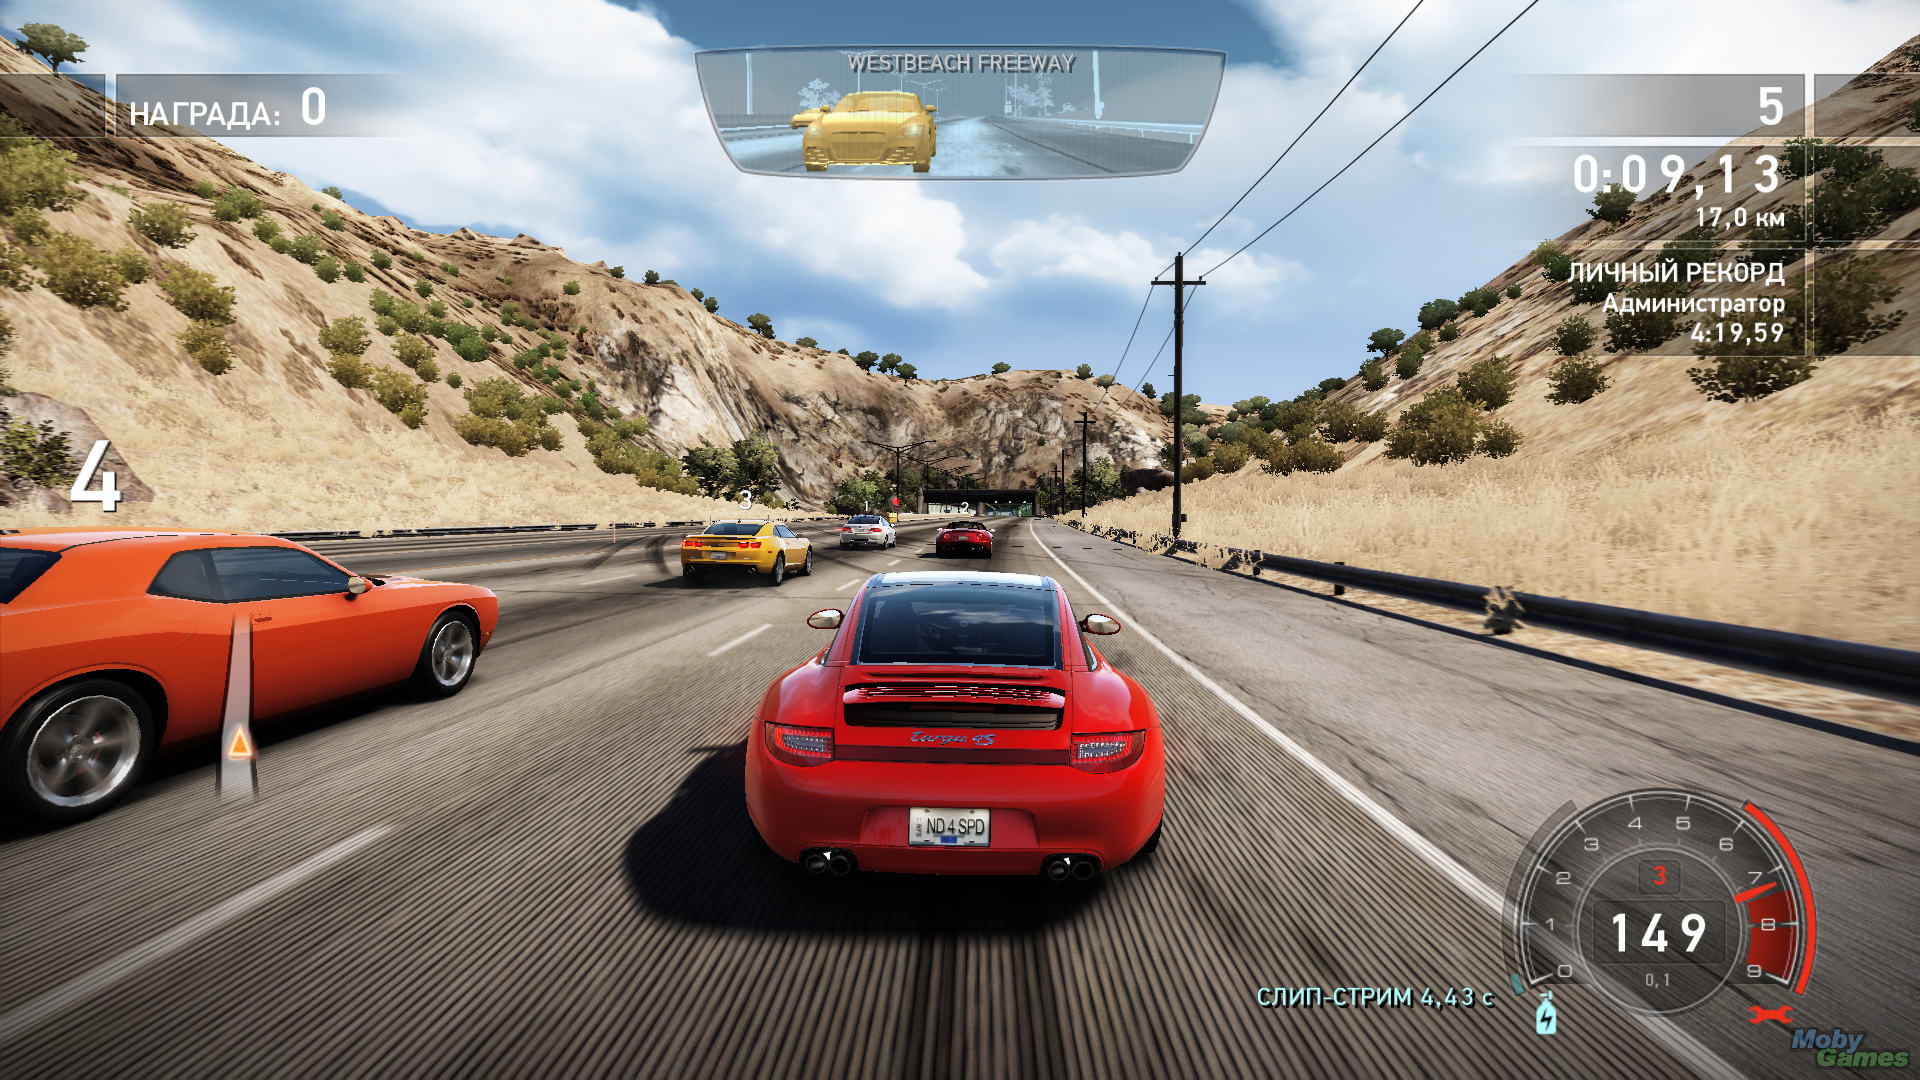 Новую Игру Need For Speed